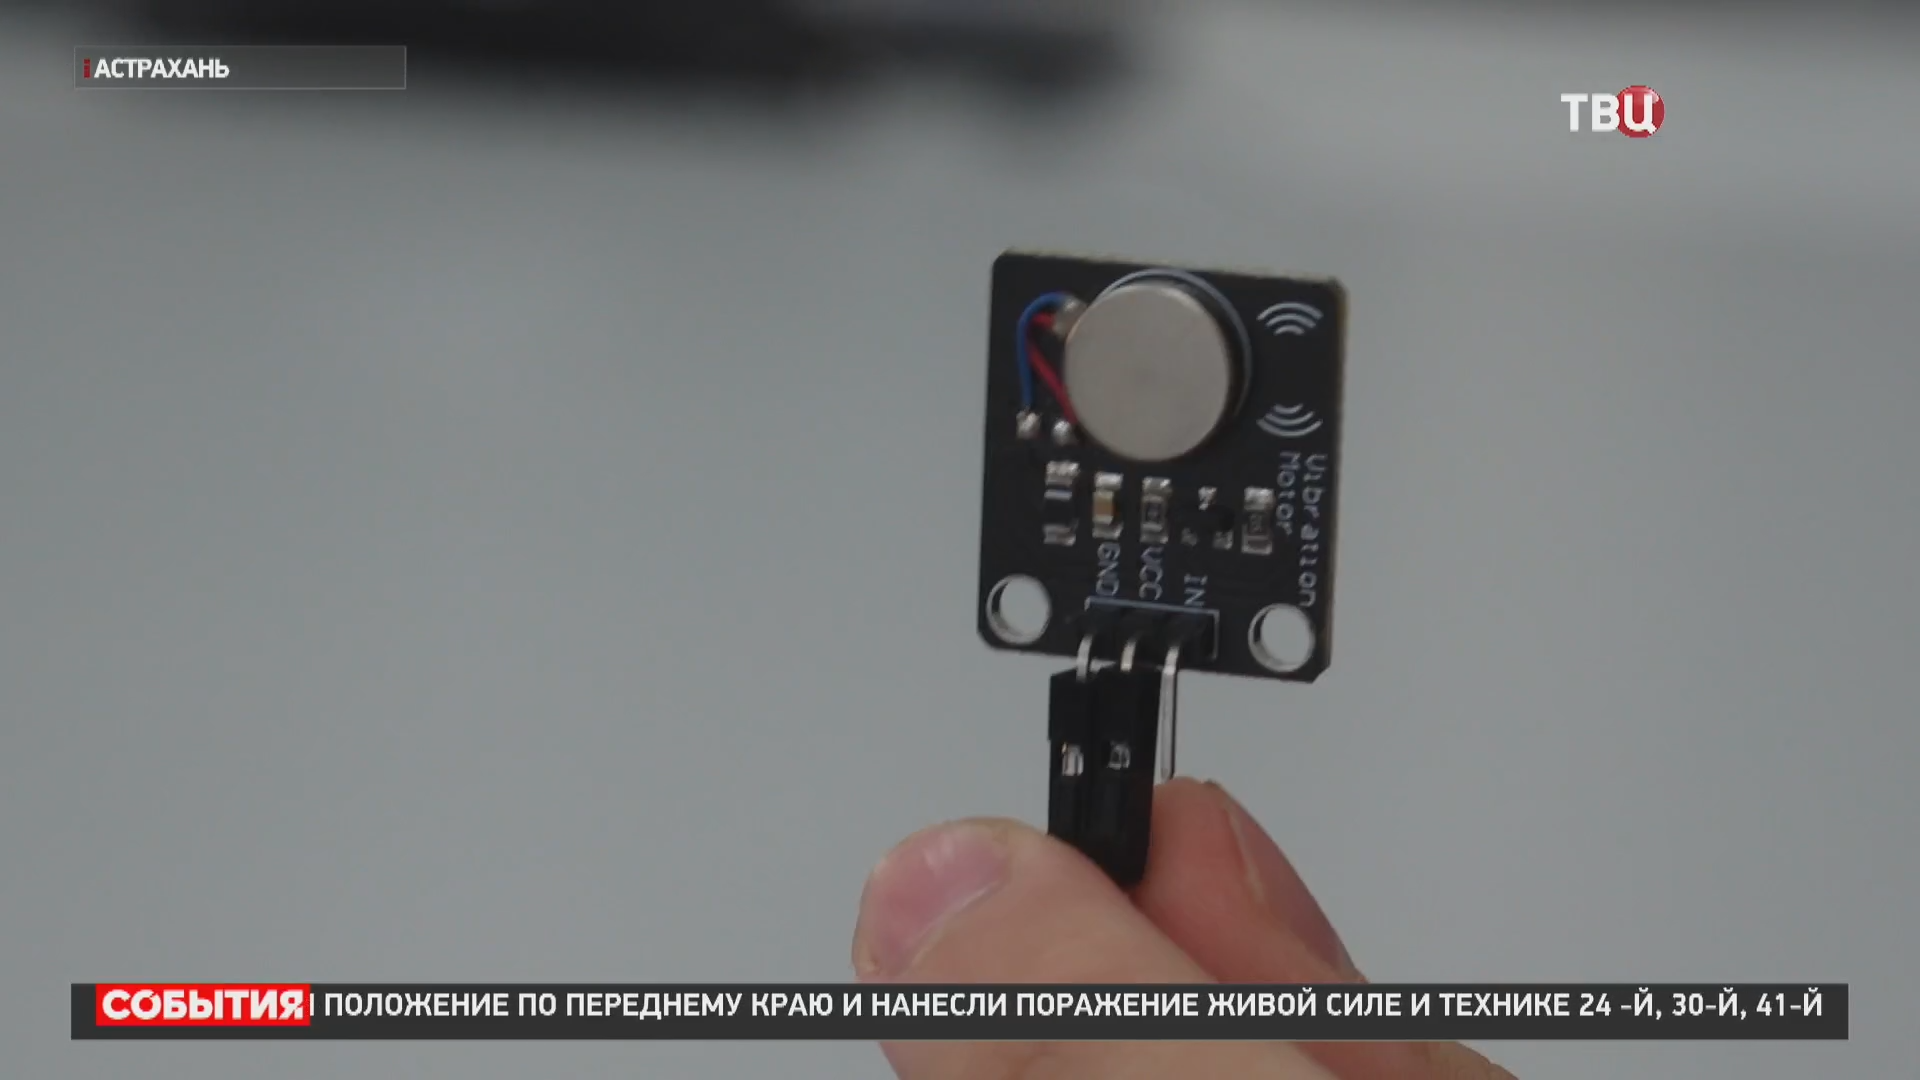 Российский школьник изобрёл устройство для лечения серьёзного недуга / События на ТВЦ